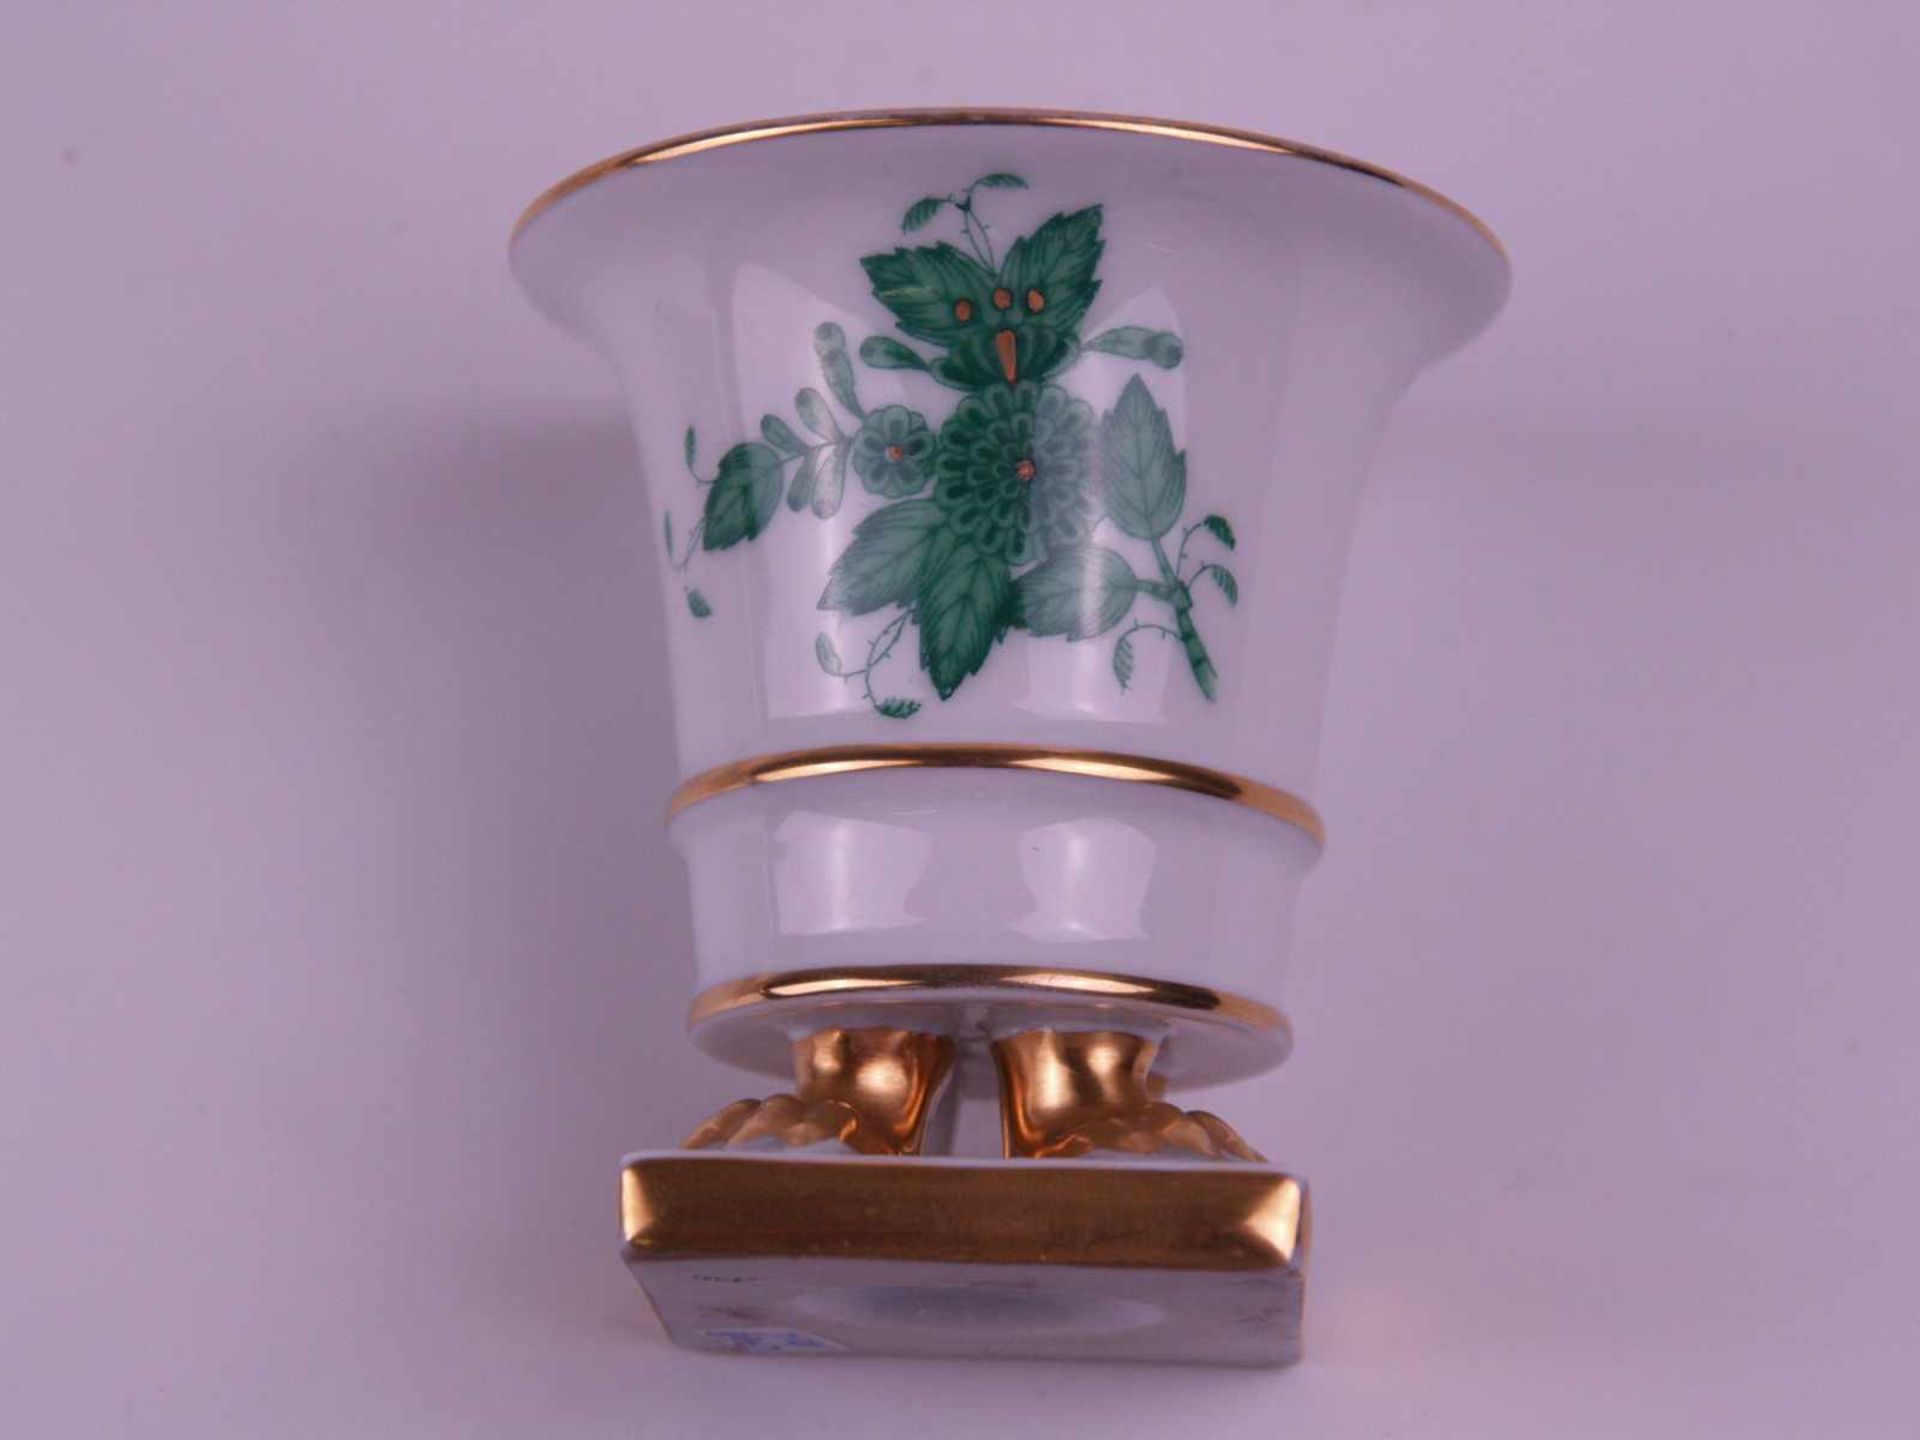 Konvolut Herend Porzellan - Schale und Fußvase, Herend, Dekor:Apponyi grün, goldstaffiert, 1x Vase - Bild 3 aus 4